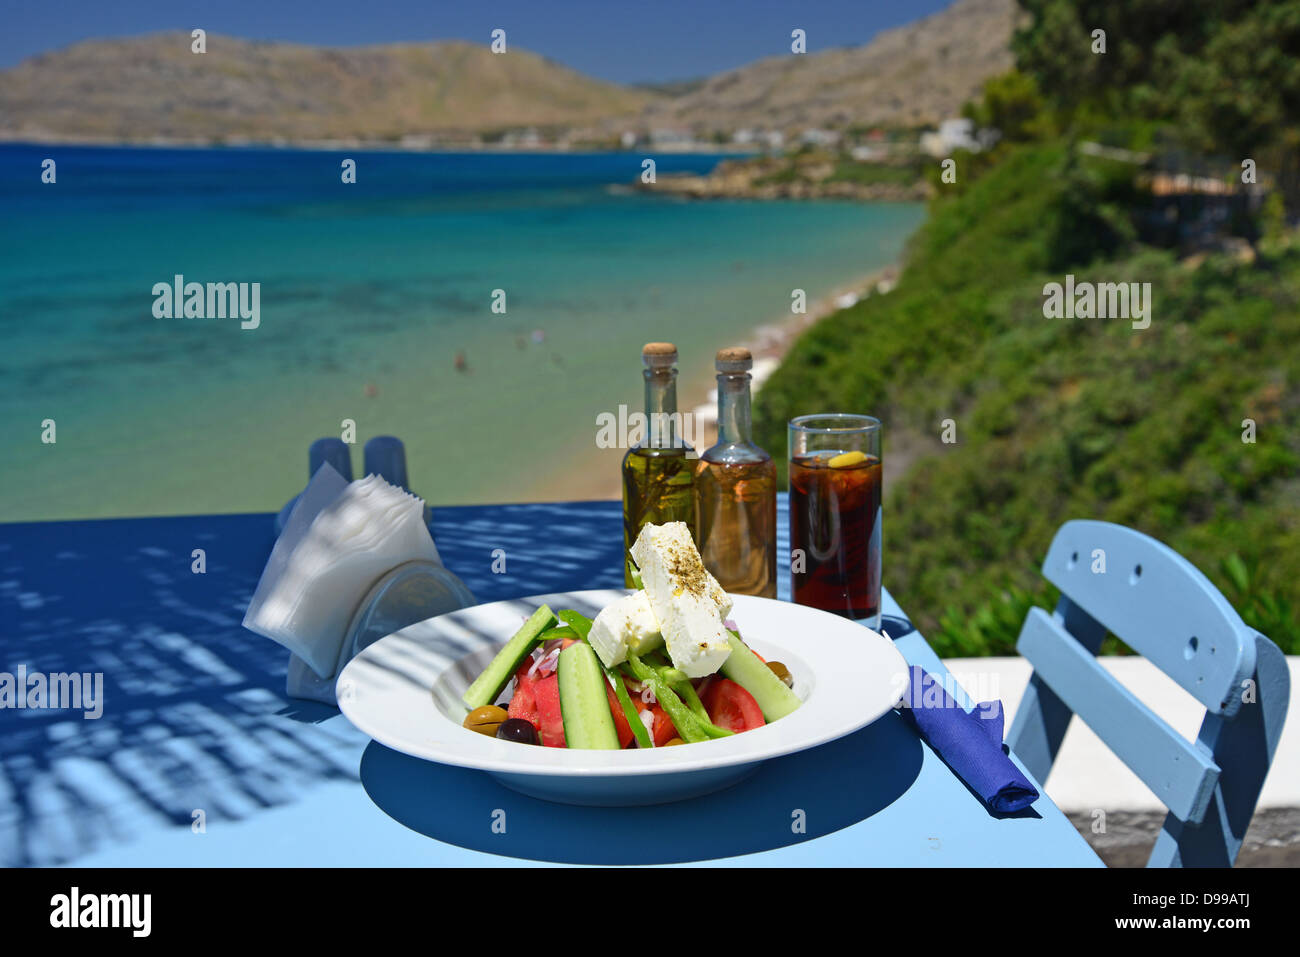 Insalata greca sulla tabella "Philosphia' taverna sulla spiaggia, Pefkos, Rodi (Rodi), del Dodecaneso, Egeo Meridionale Regione, Grecia Foto Stock